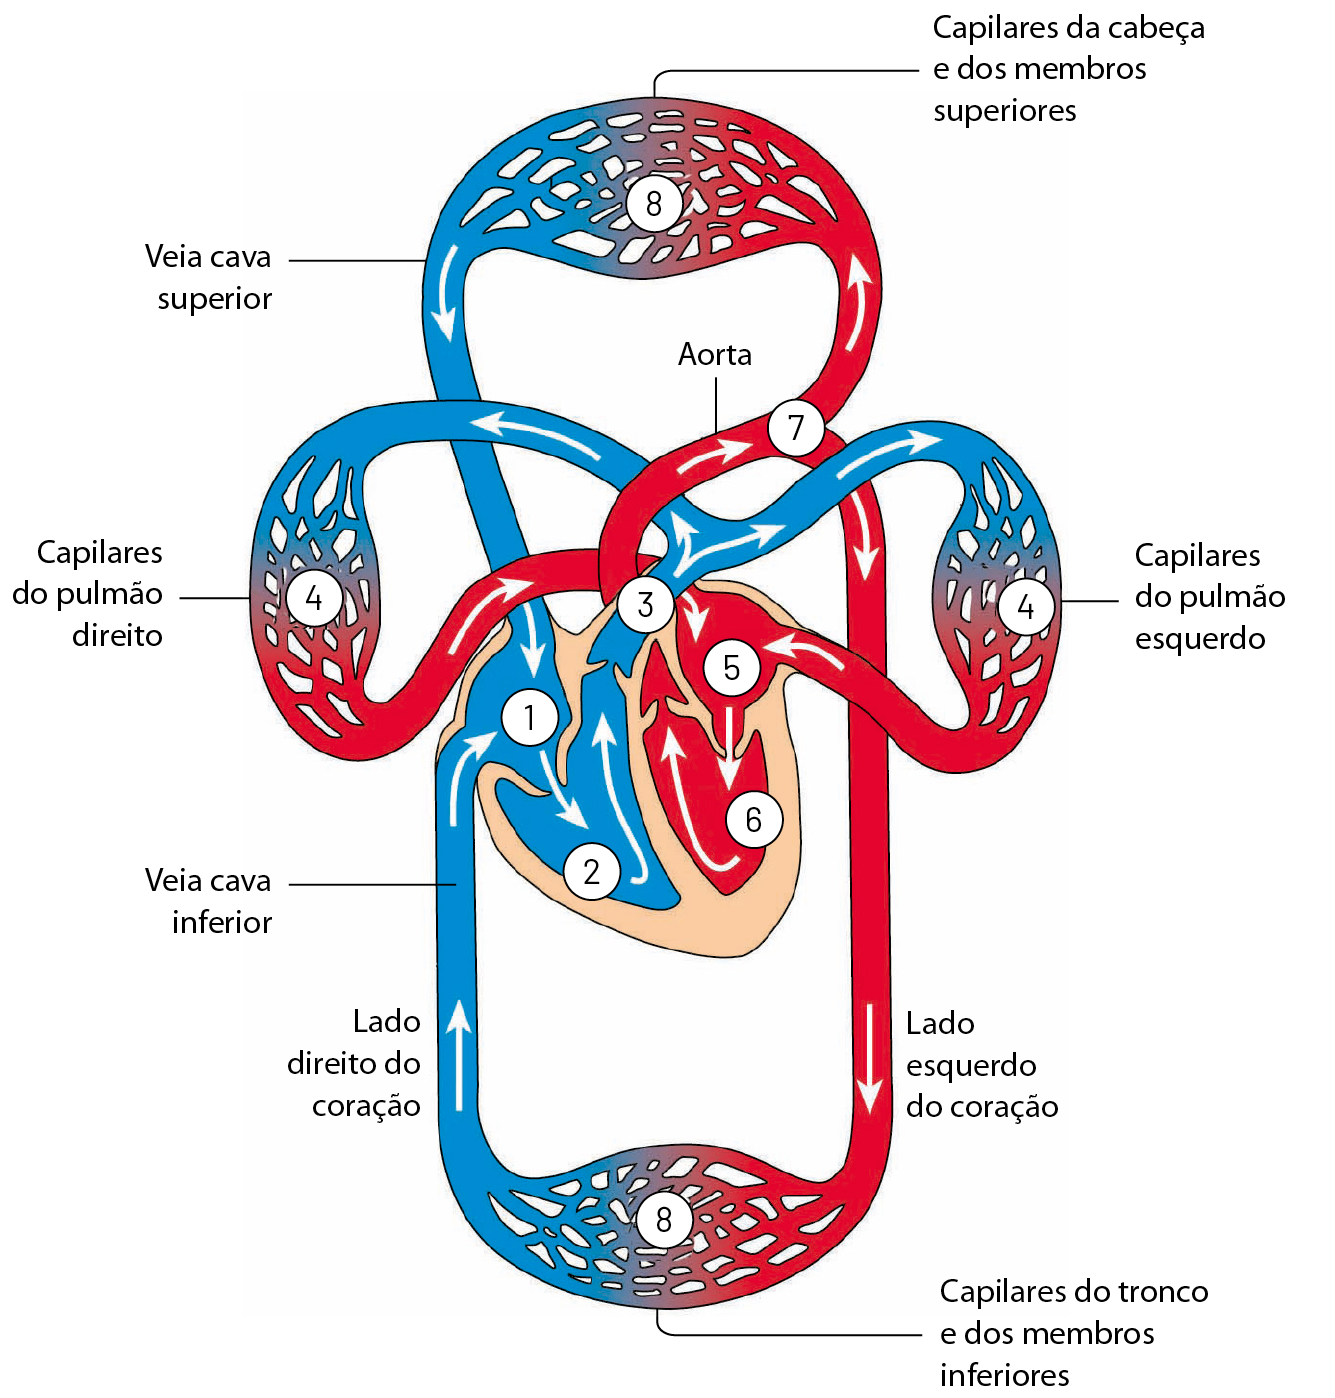 Esquema. No centro, coração. Lado direito do coração em azul. Cavidade superior do lado direito: 1. Cavidade inferior do lado direito: 2.  De 2 sai um tubo de grande diâmetro: 3. Esse vaso se ramifica em dois e cada um vai para um lado do corpo (direita e esquerda), se ramificando cada vez mais formando capilares do pulmão direito e capilares do pulmão esquerdo: 4. Esses capilares se juntam e formam tubos de maior diâmetro, voltando para a cavidade superior esquerda do coração: 5, indo em seguida para a cavidade inferior esquerda: 6. De 6 sai um tubo de grande diâmetro: 7. Esse tubo se ramifica em dois e cada um vai para um lado do corpo (superior e inferior), se ramificando cada vez mais formando capilares da cabeça e dos membros superiores e capilares do tronco e dos membros inferiores: 8. De 8, esses capilares se juntam e formam tubos de maior diâmetro, voltando para a cavidade superior direita do coração.